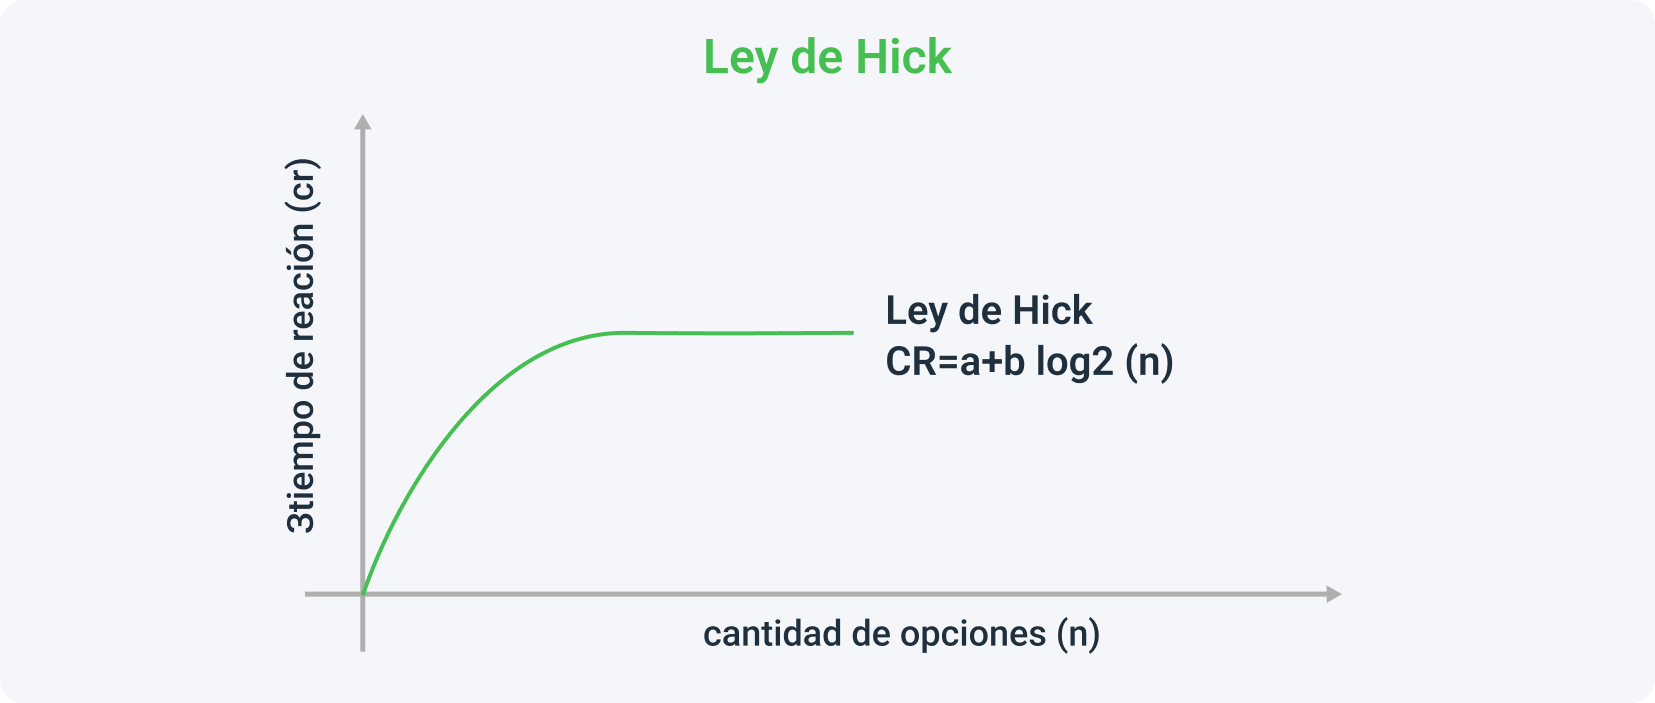 La teoría de Hick es el truco utilizado a la hora de crear una landing page